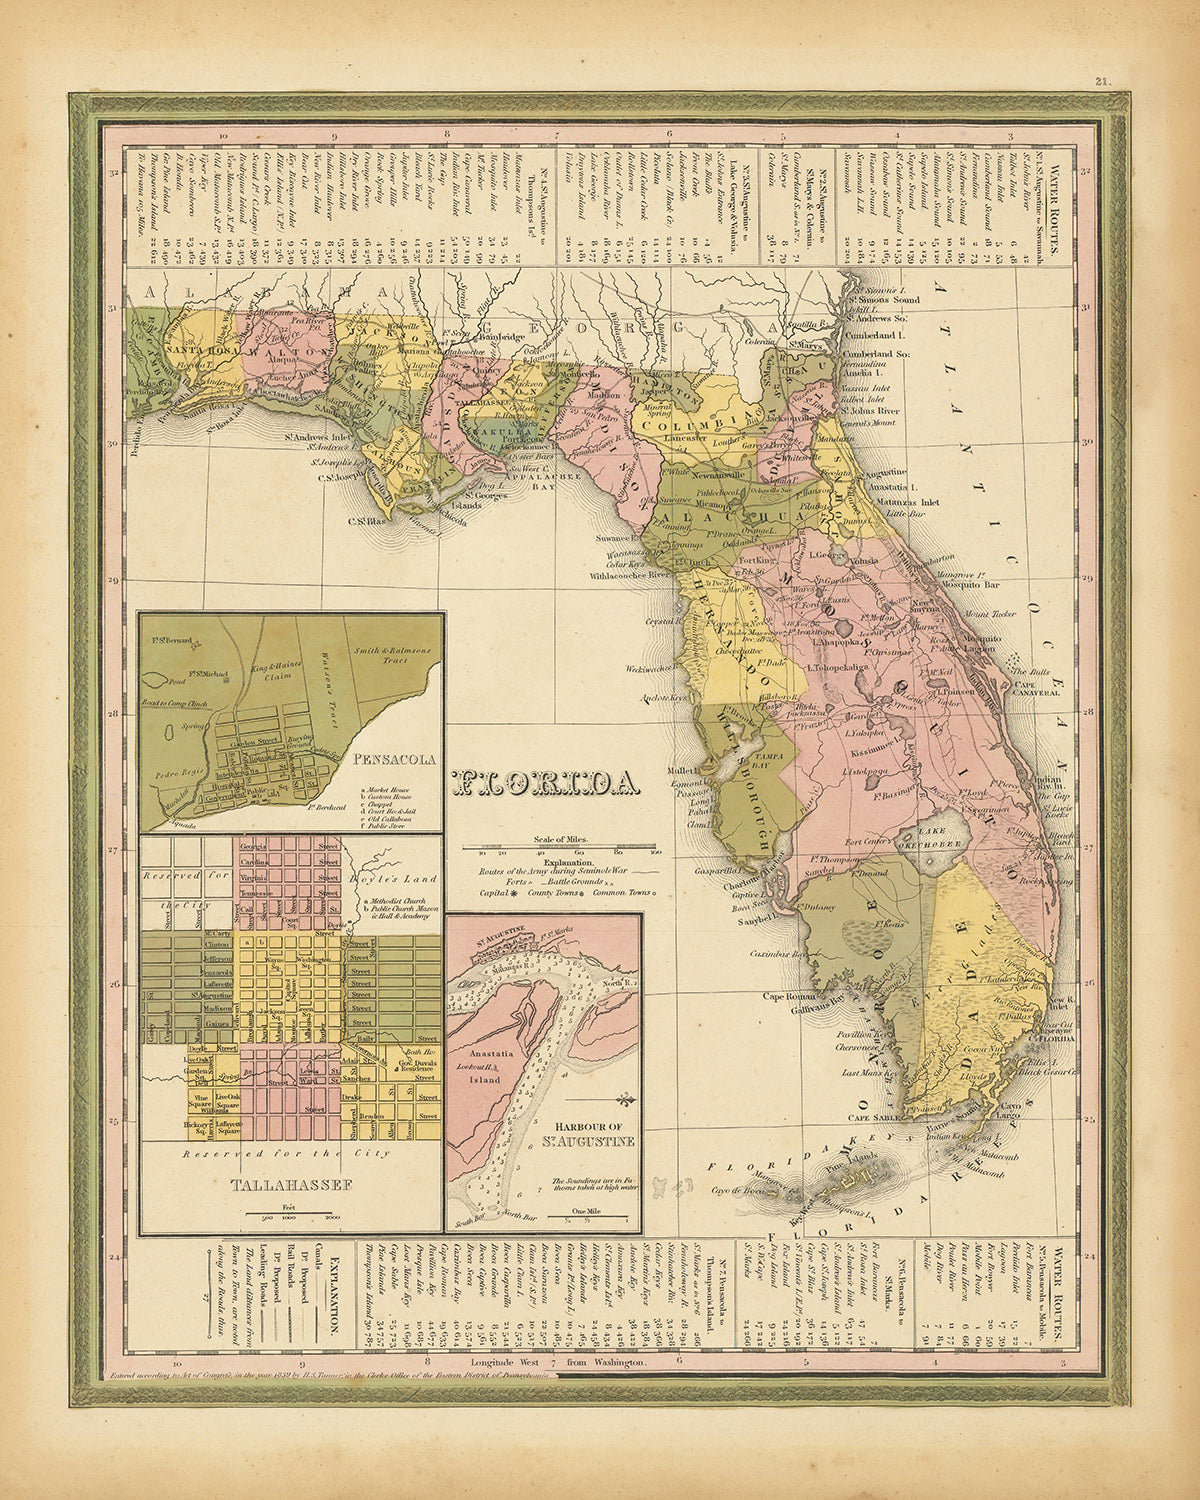 Alte Karte von Florida von H.S. Tanner, 1839: Miami, Tampa, Orlando, St. Petersburg, Jacksonville, Cayo Lago, Keys